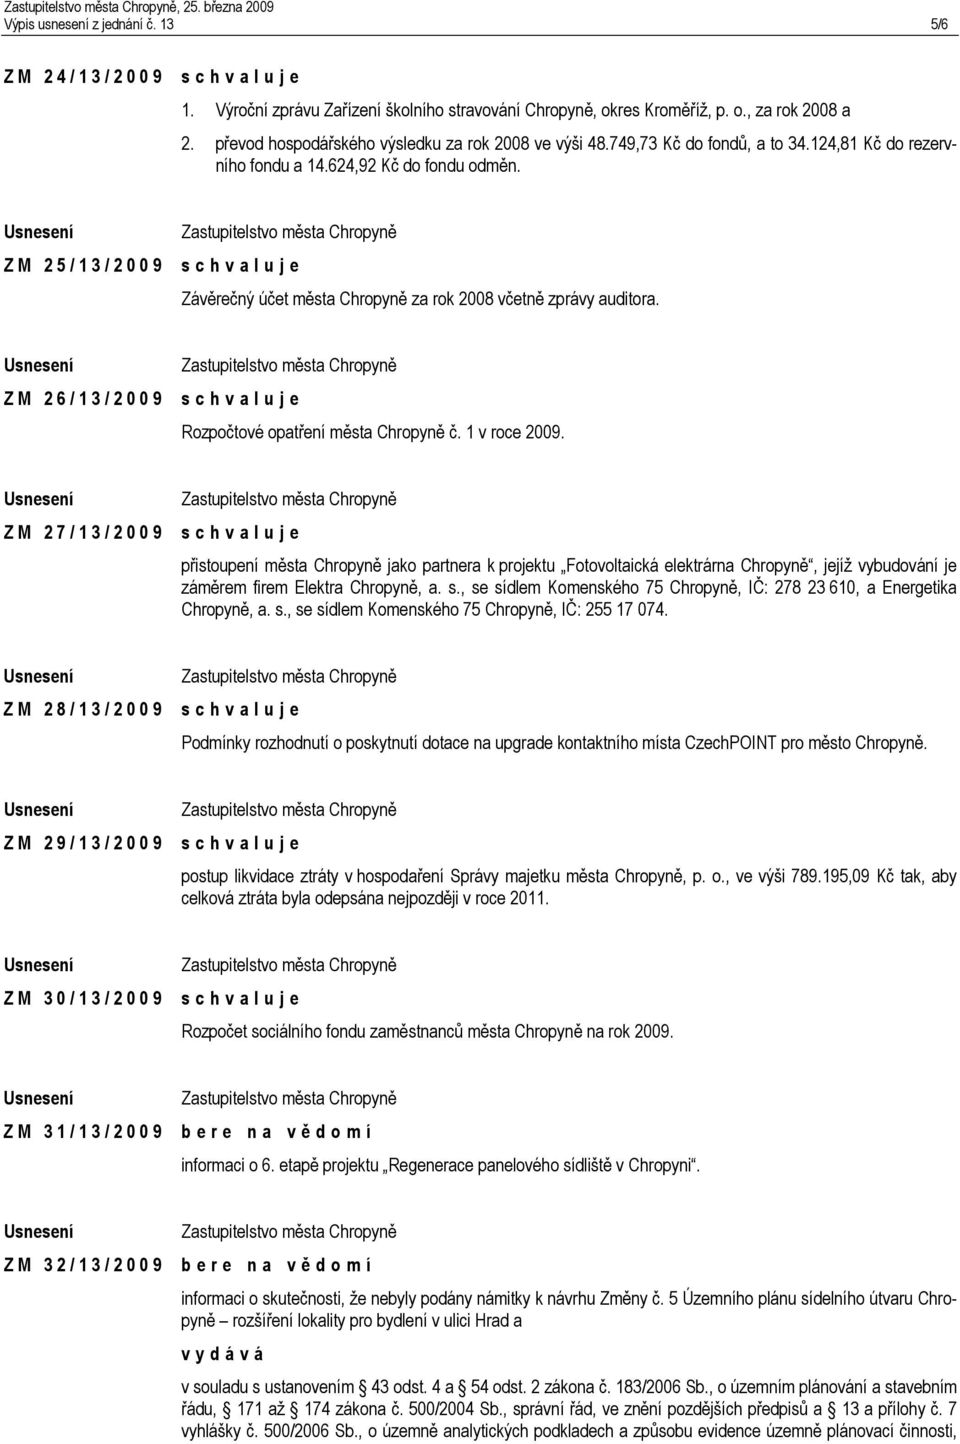 Z M 2 5 / 1 3 / 2 0 0 9 Závěrečný účet města Chropyně za rok 2008 včetně zprávy auditora. Z M 2 6 / 1 3 / 2 0 0 9 Rozpočtové opatření města Chropyně č. 1 v roce 2009.